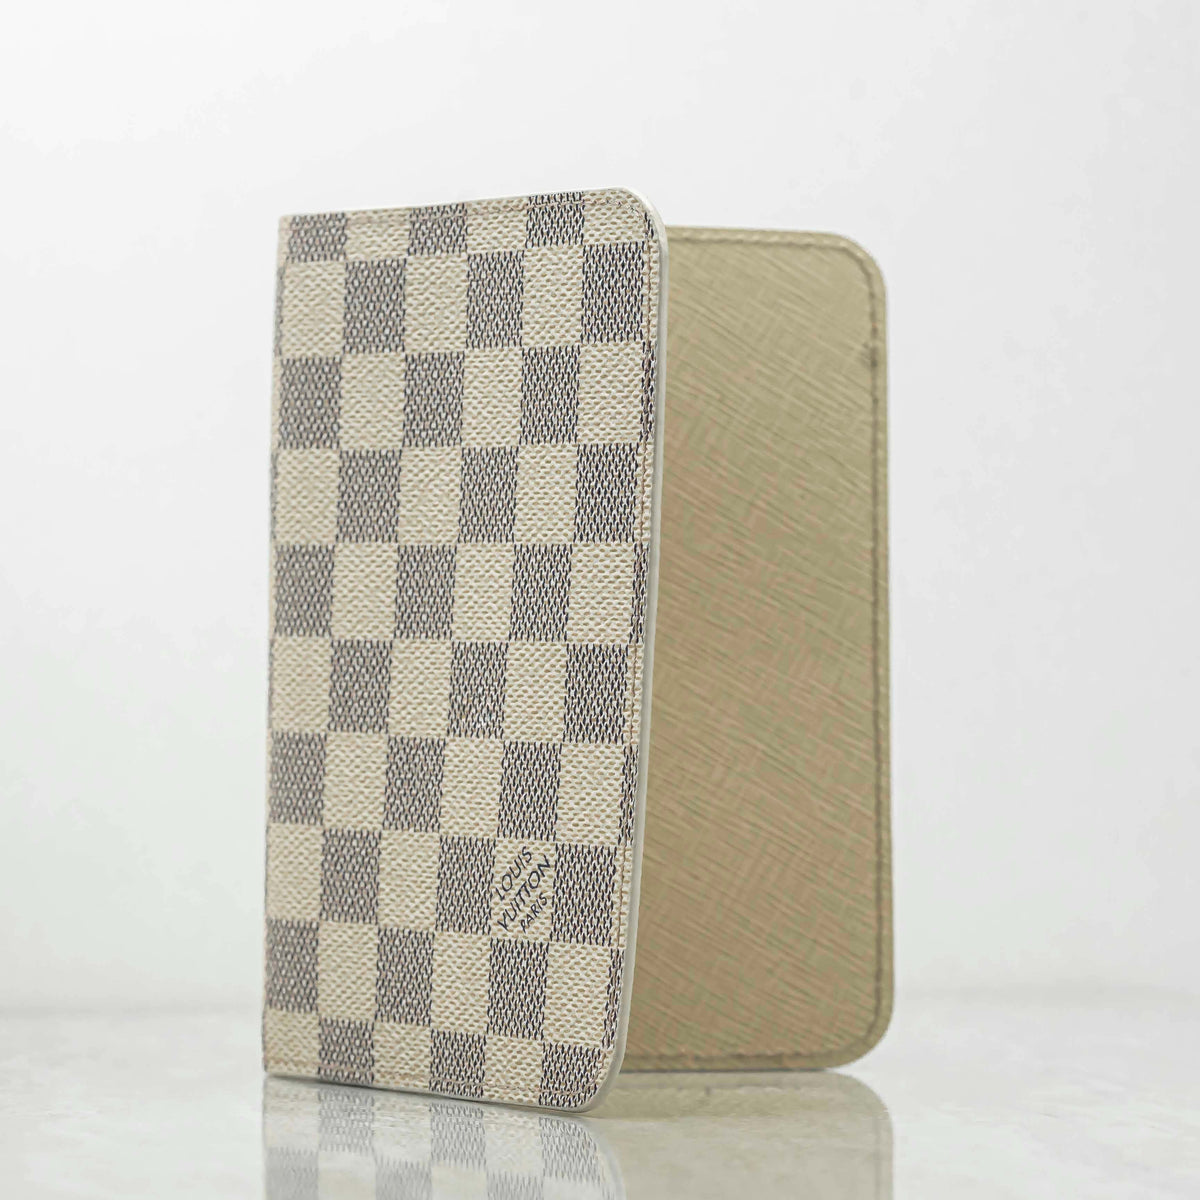 Louis Vuitton Damier Azur Canvas Passport Cover - ShopStyle Wallets & Card  Holders